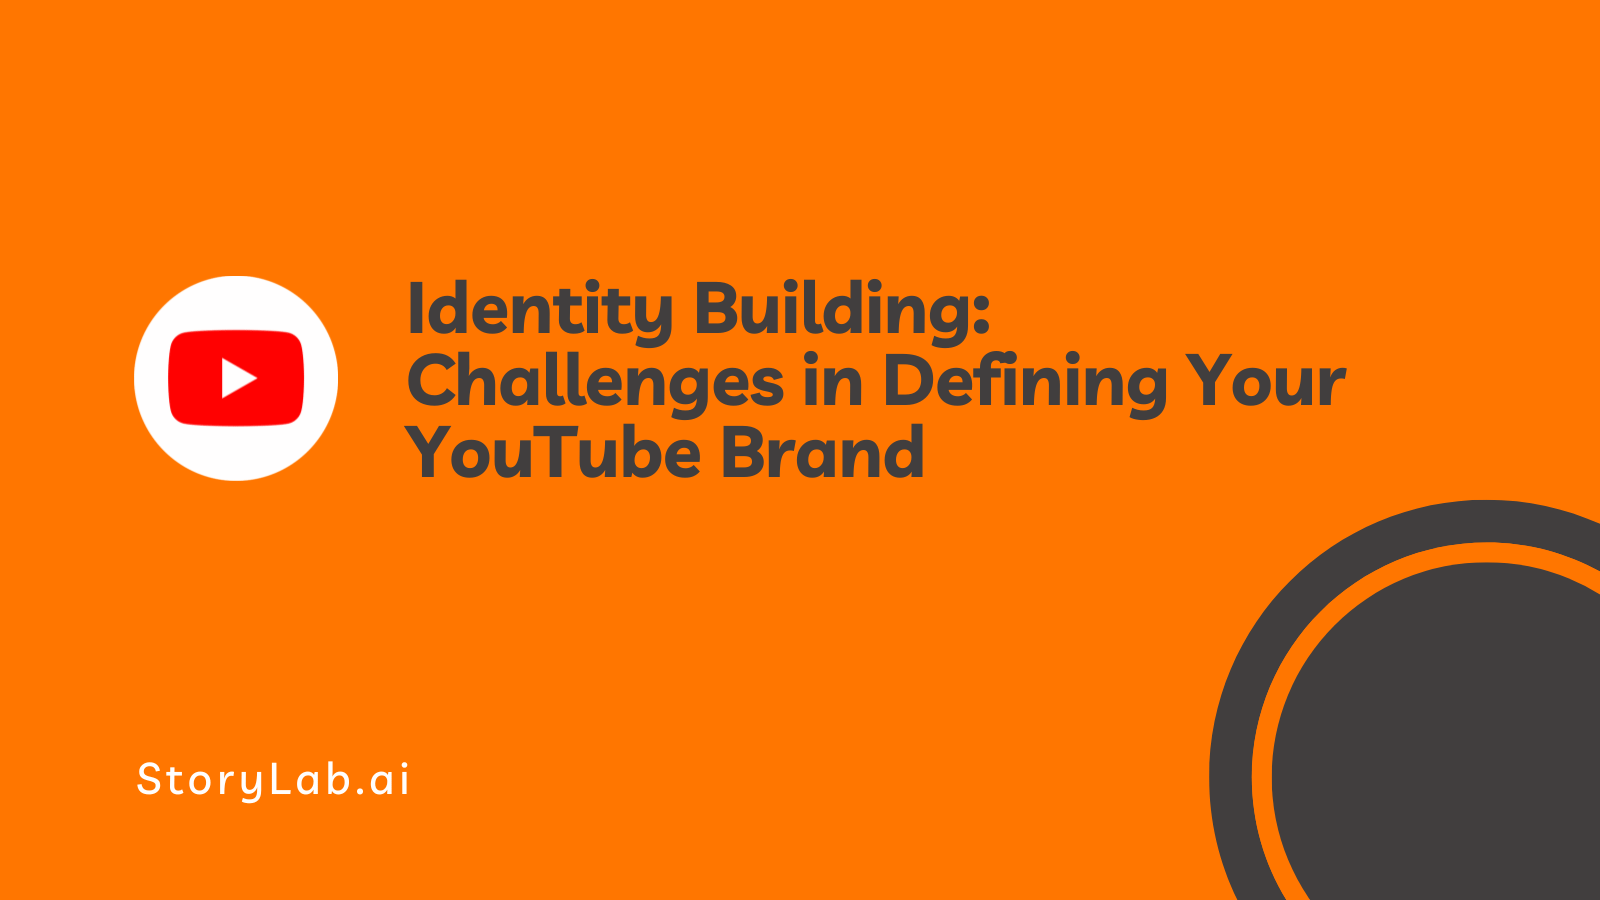 Desafios de construção de identidade na definição de sua marca no YouTube